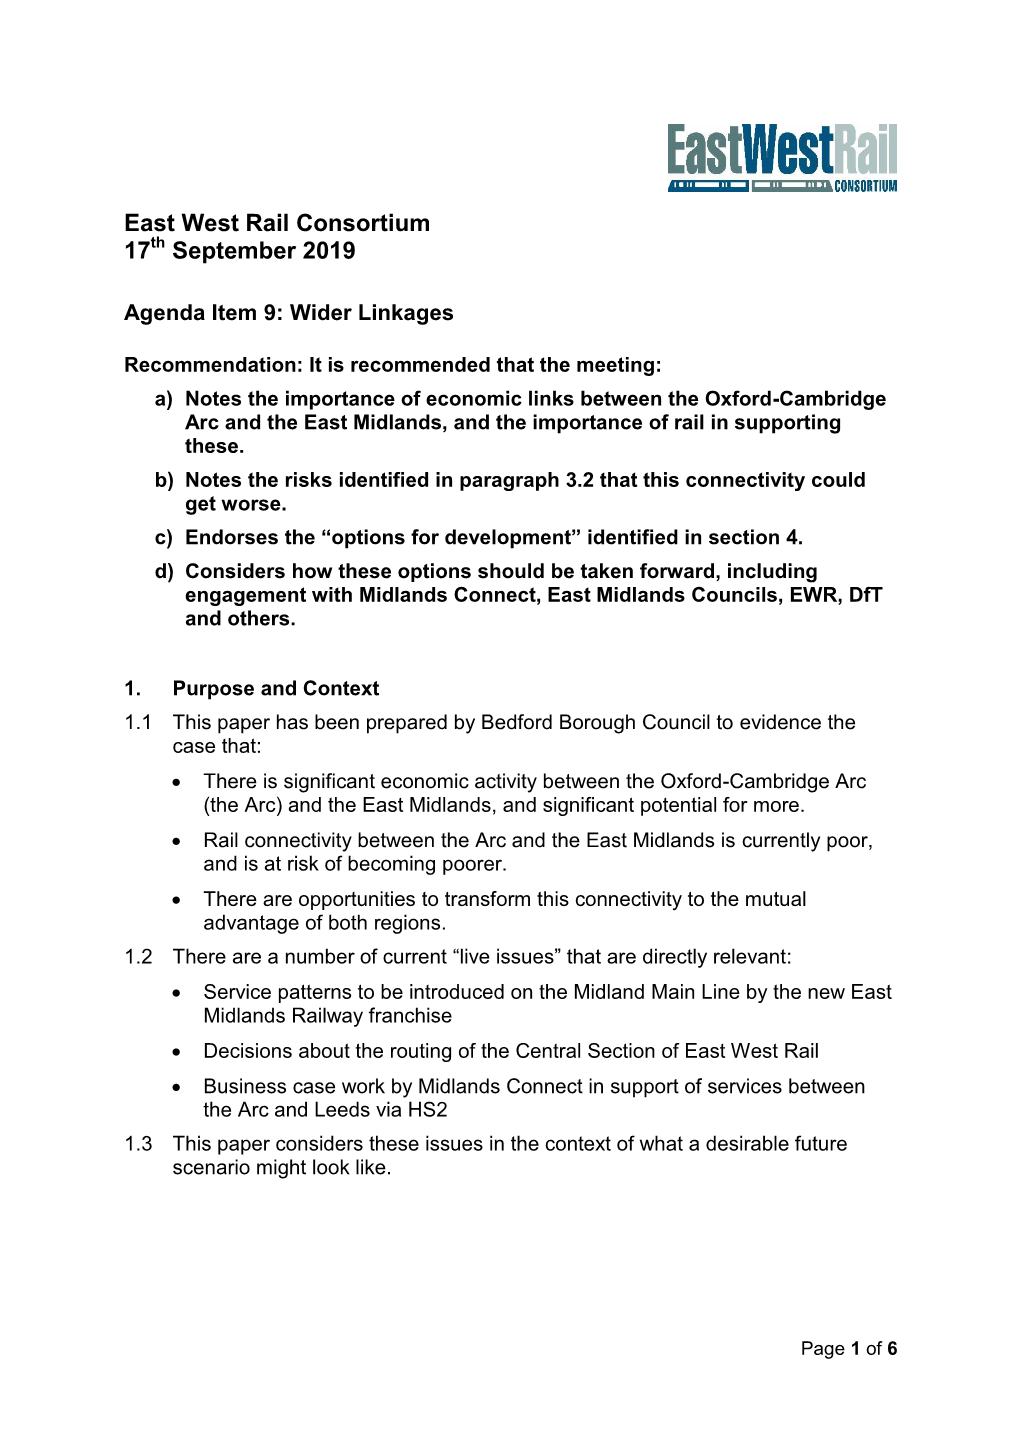 East West Rail Consortium 17 September 2019